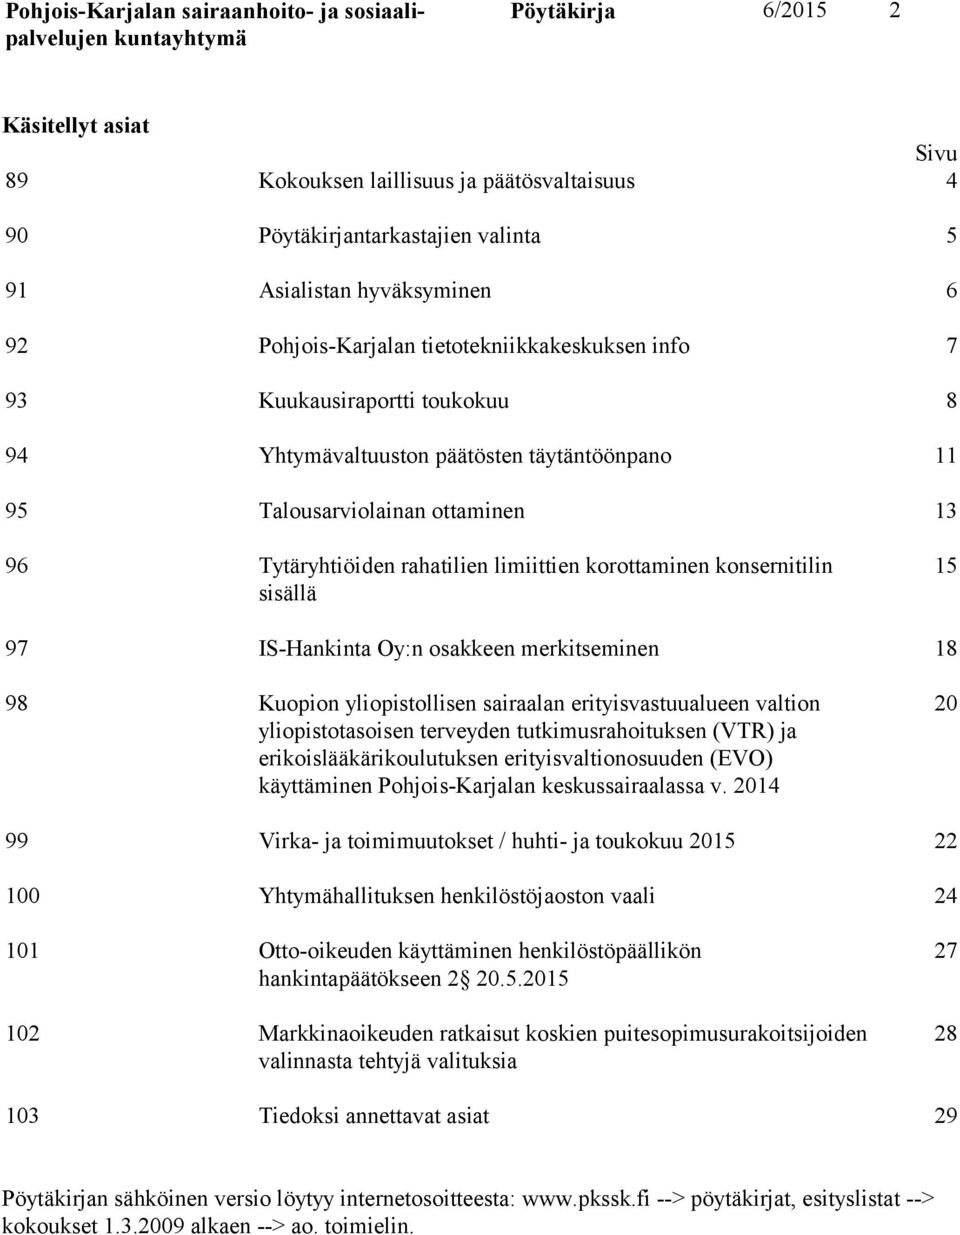 97 IS-Hankinta Oy:n osakkeen merkitseminen 18 98 Kuopion yliopistollisen sairaalan erityisvastuualueen valtion yliopistotasoisen terveyden tutkimusrahoituksen (VTR) ja erikoislääkärikoulutuksen